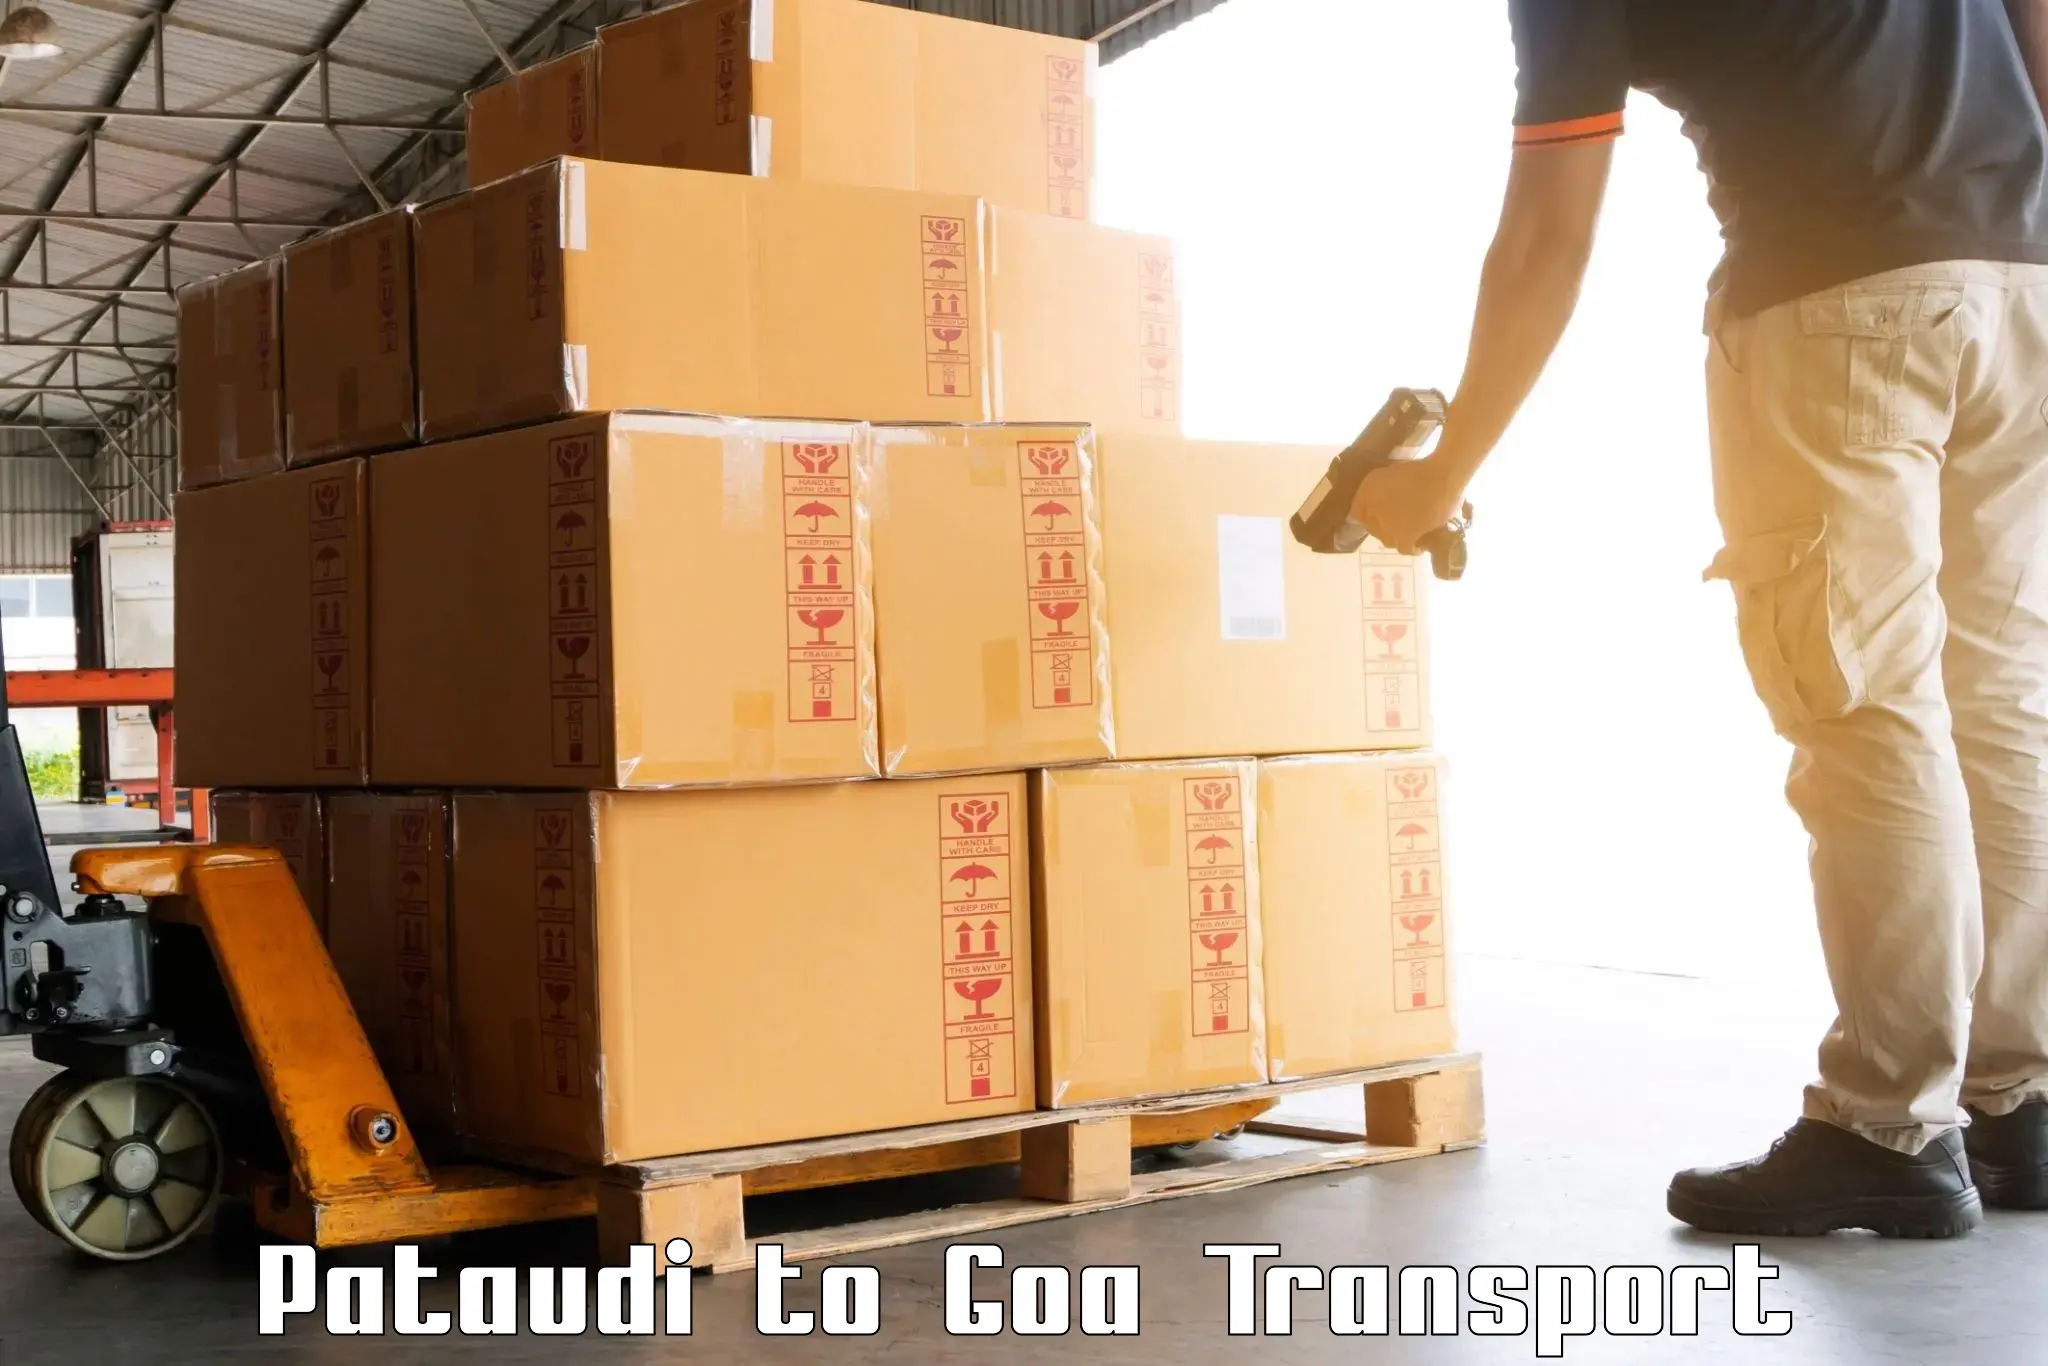 Online transport booking Pataudi to IIT Goa